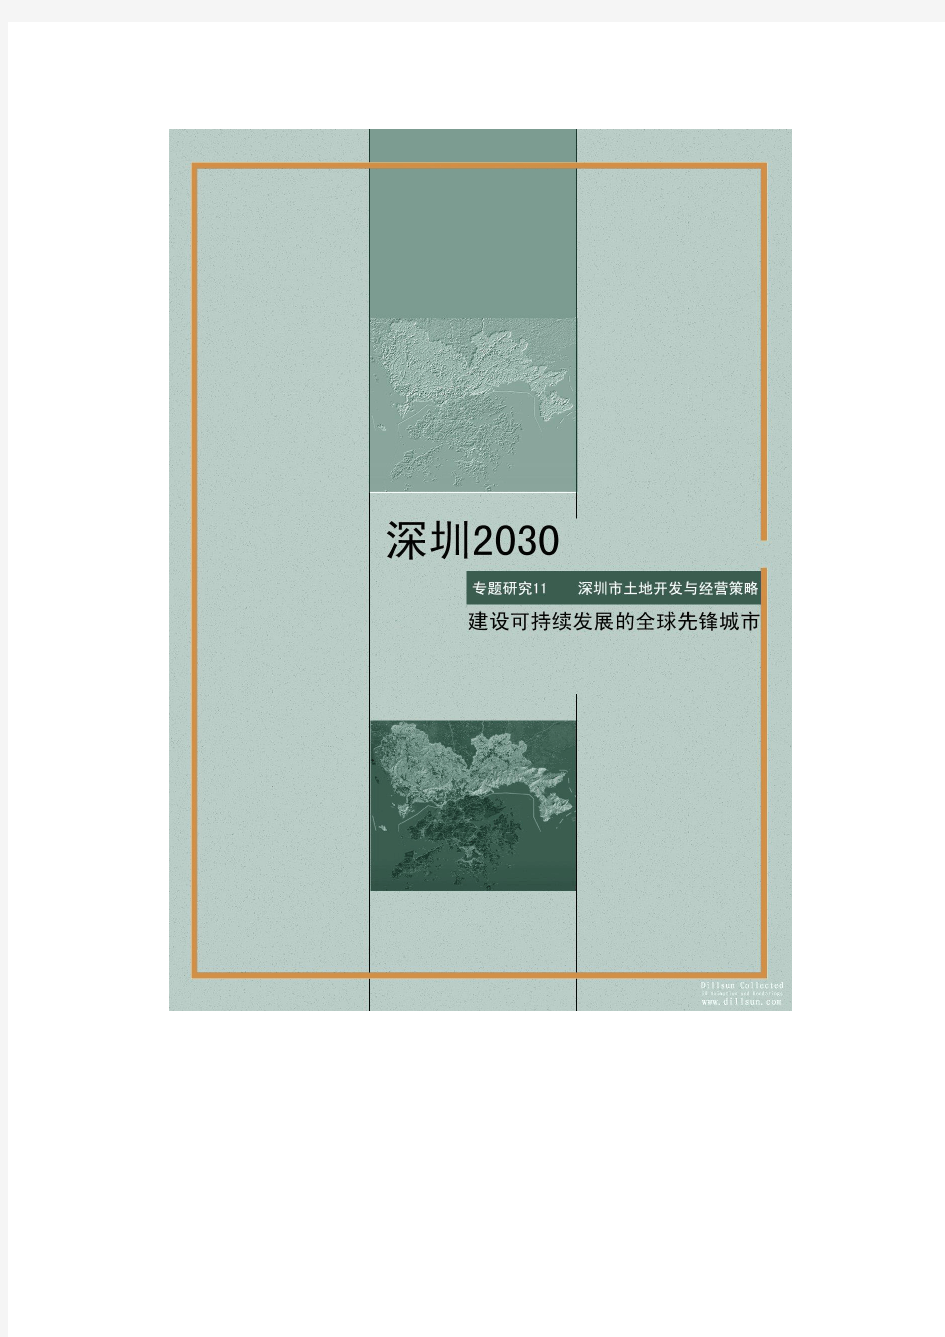 [中规院]深圳2030城市发展策略专题研究报告PART11深圳市土地开发与经营策略